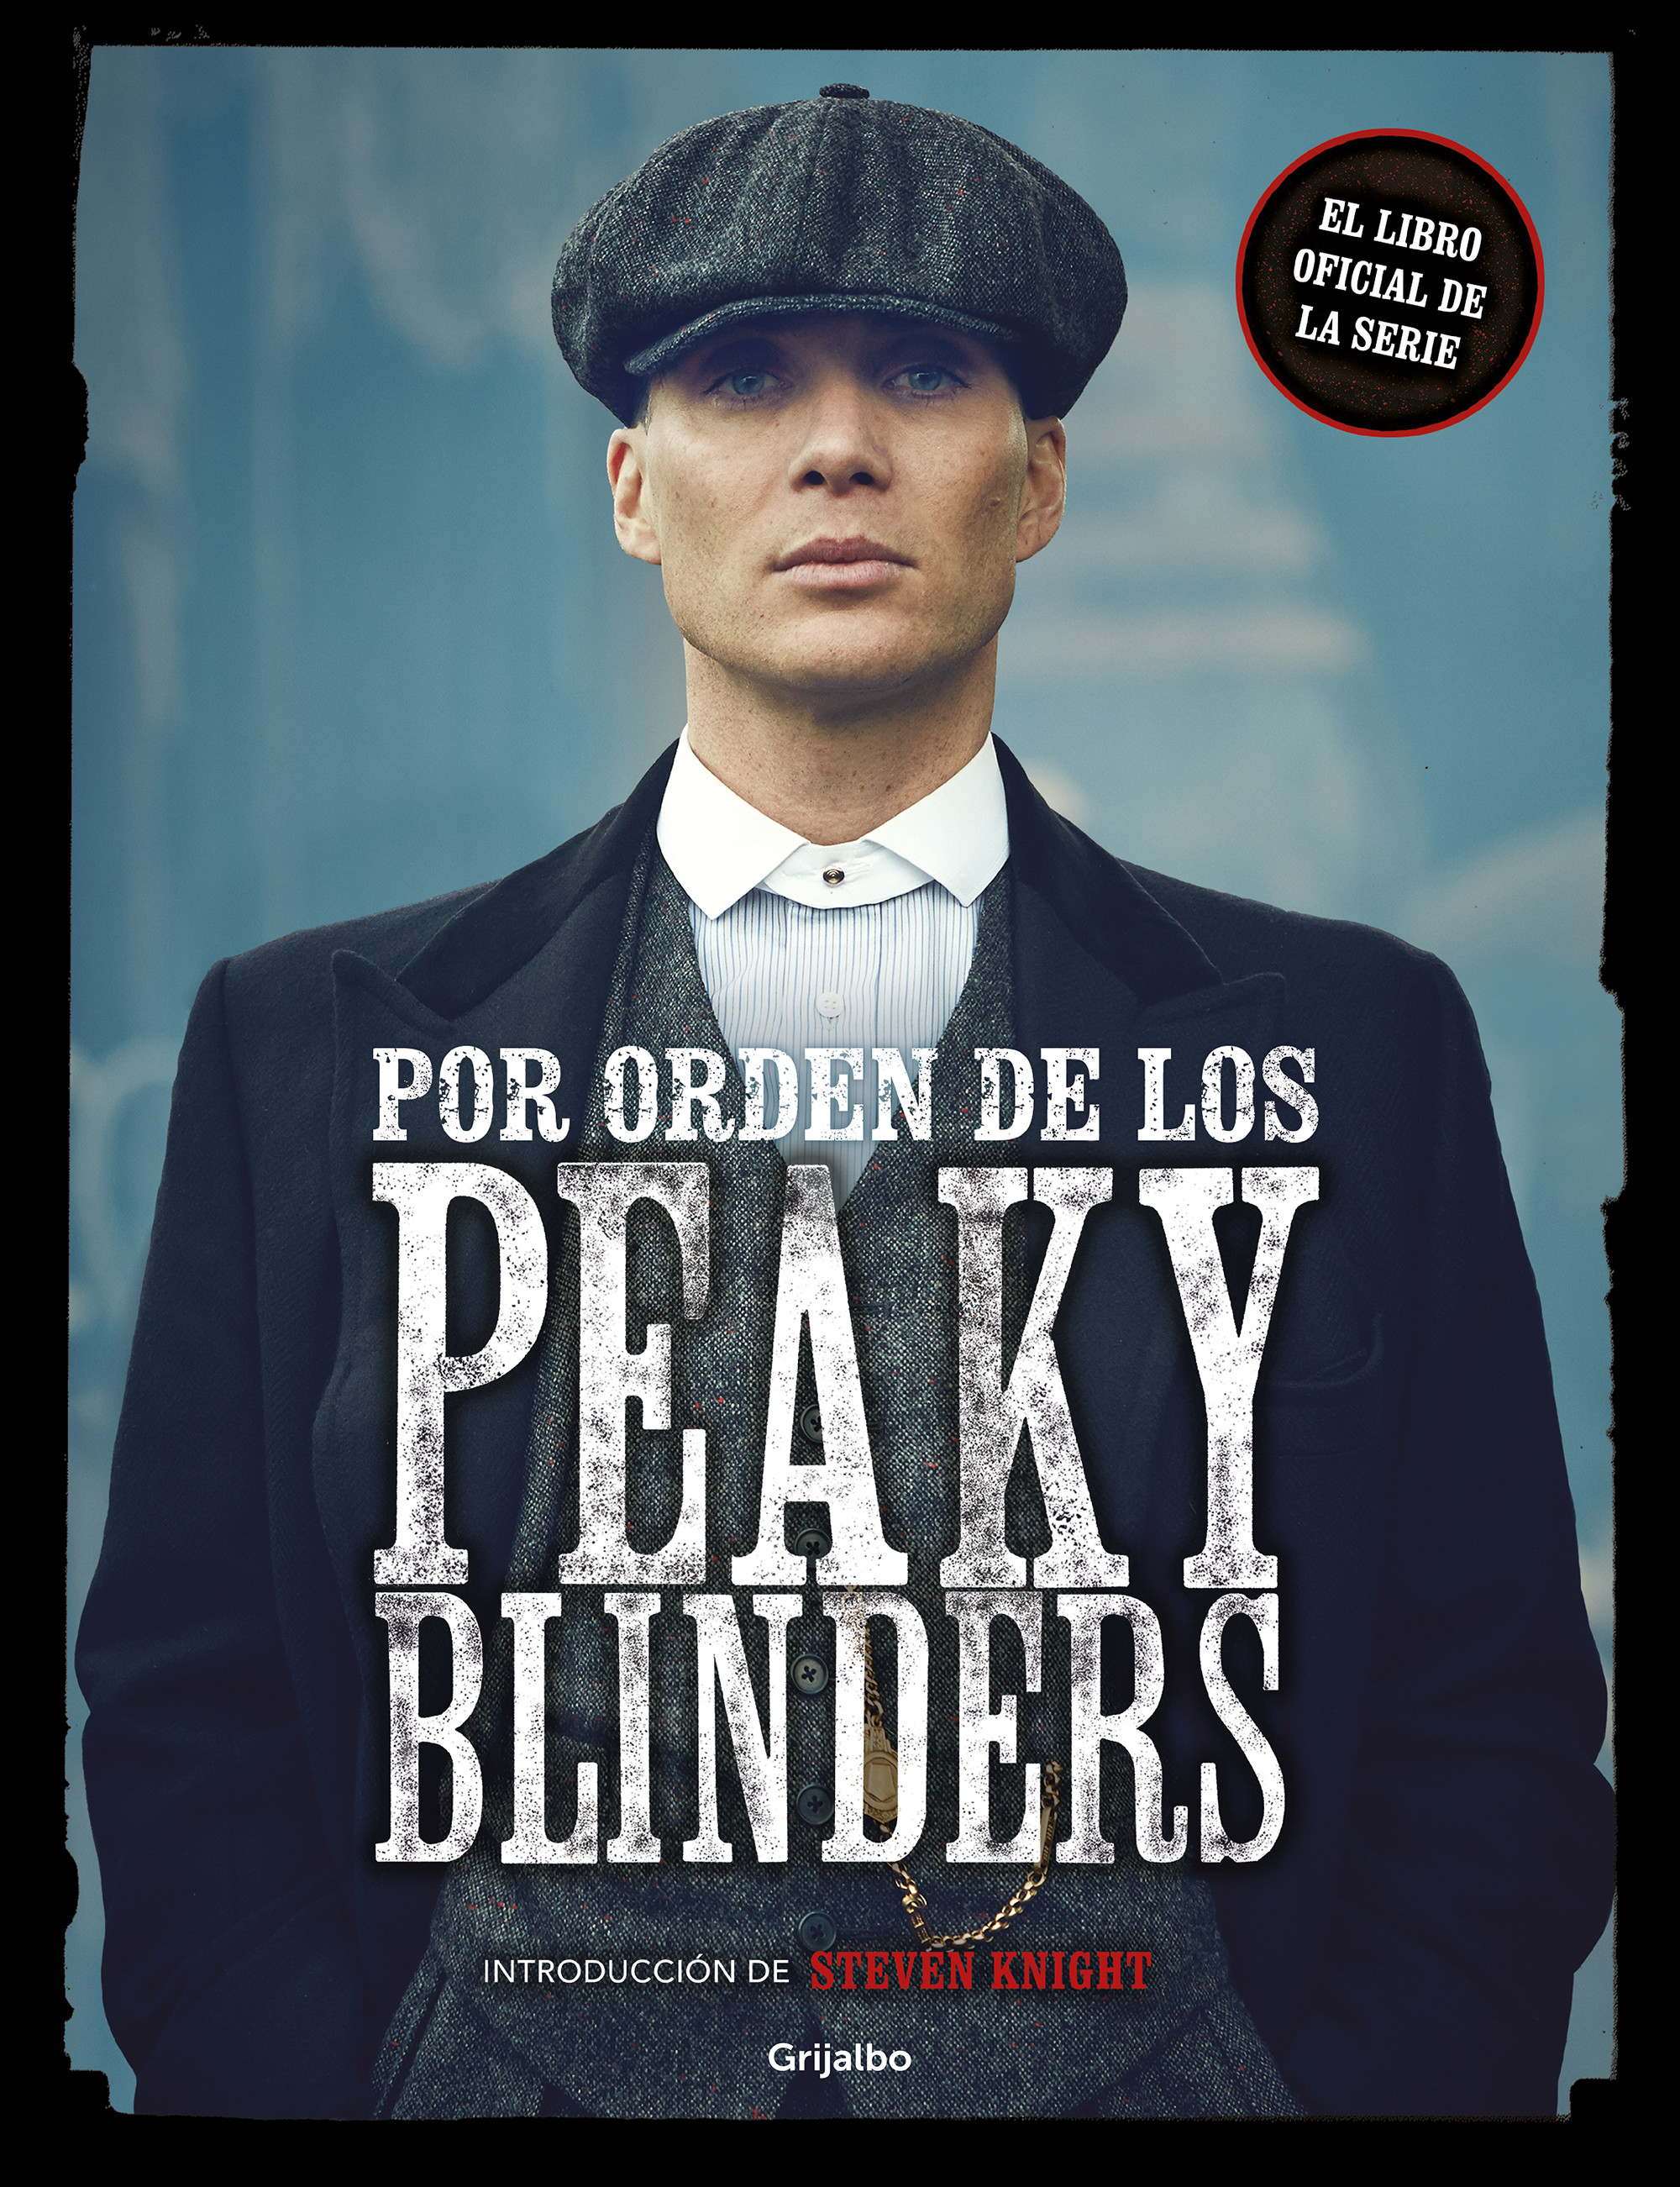 Peaky Blinders: ¿Qué significa el nombre de la serie?